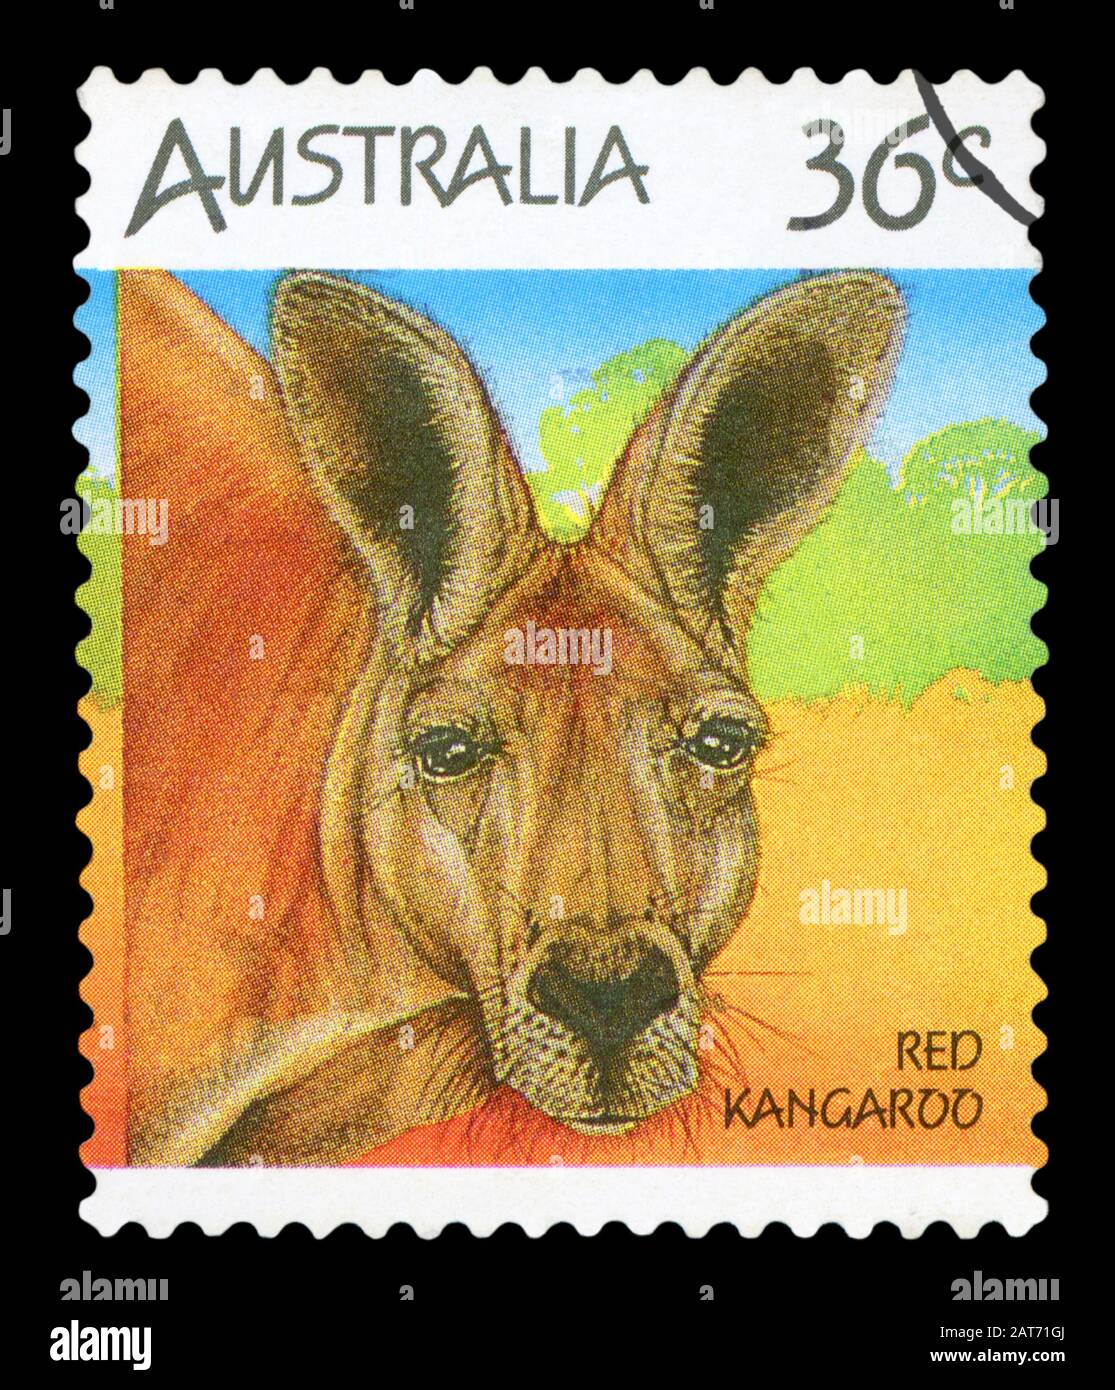 L'AUSTRALIE - circa 1994 : un timbre-poste utilisé à partir de l'Australie, représentant une image de kangourous, vers 1994. Banque D'Images